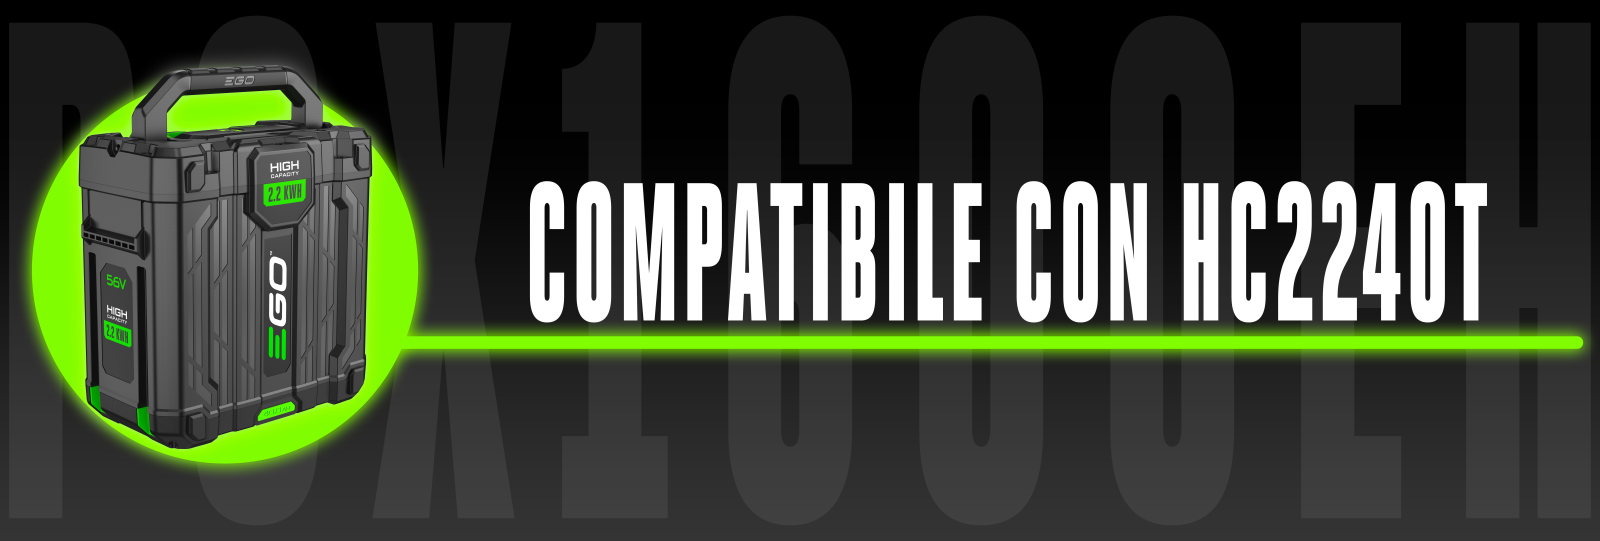 compatibilità con caricabatterie pgx1600eh E hc2240t egopower